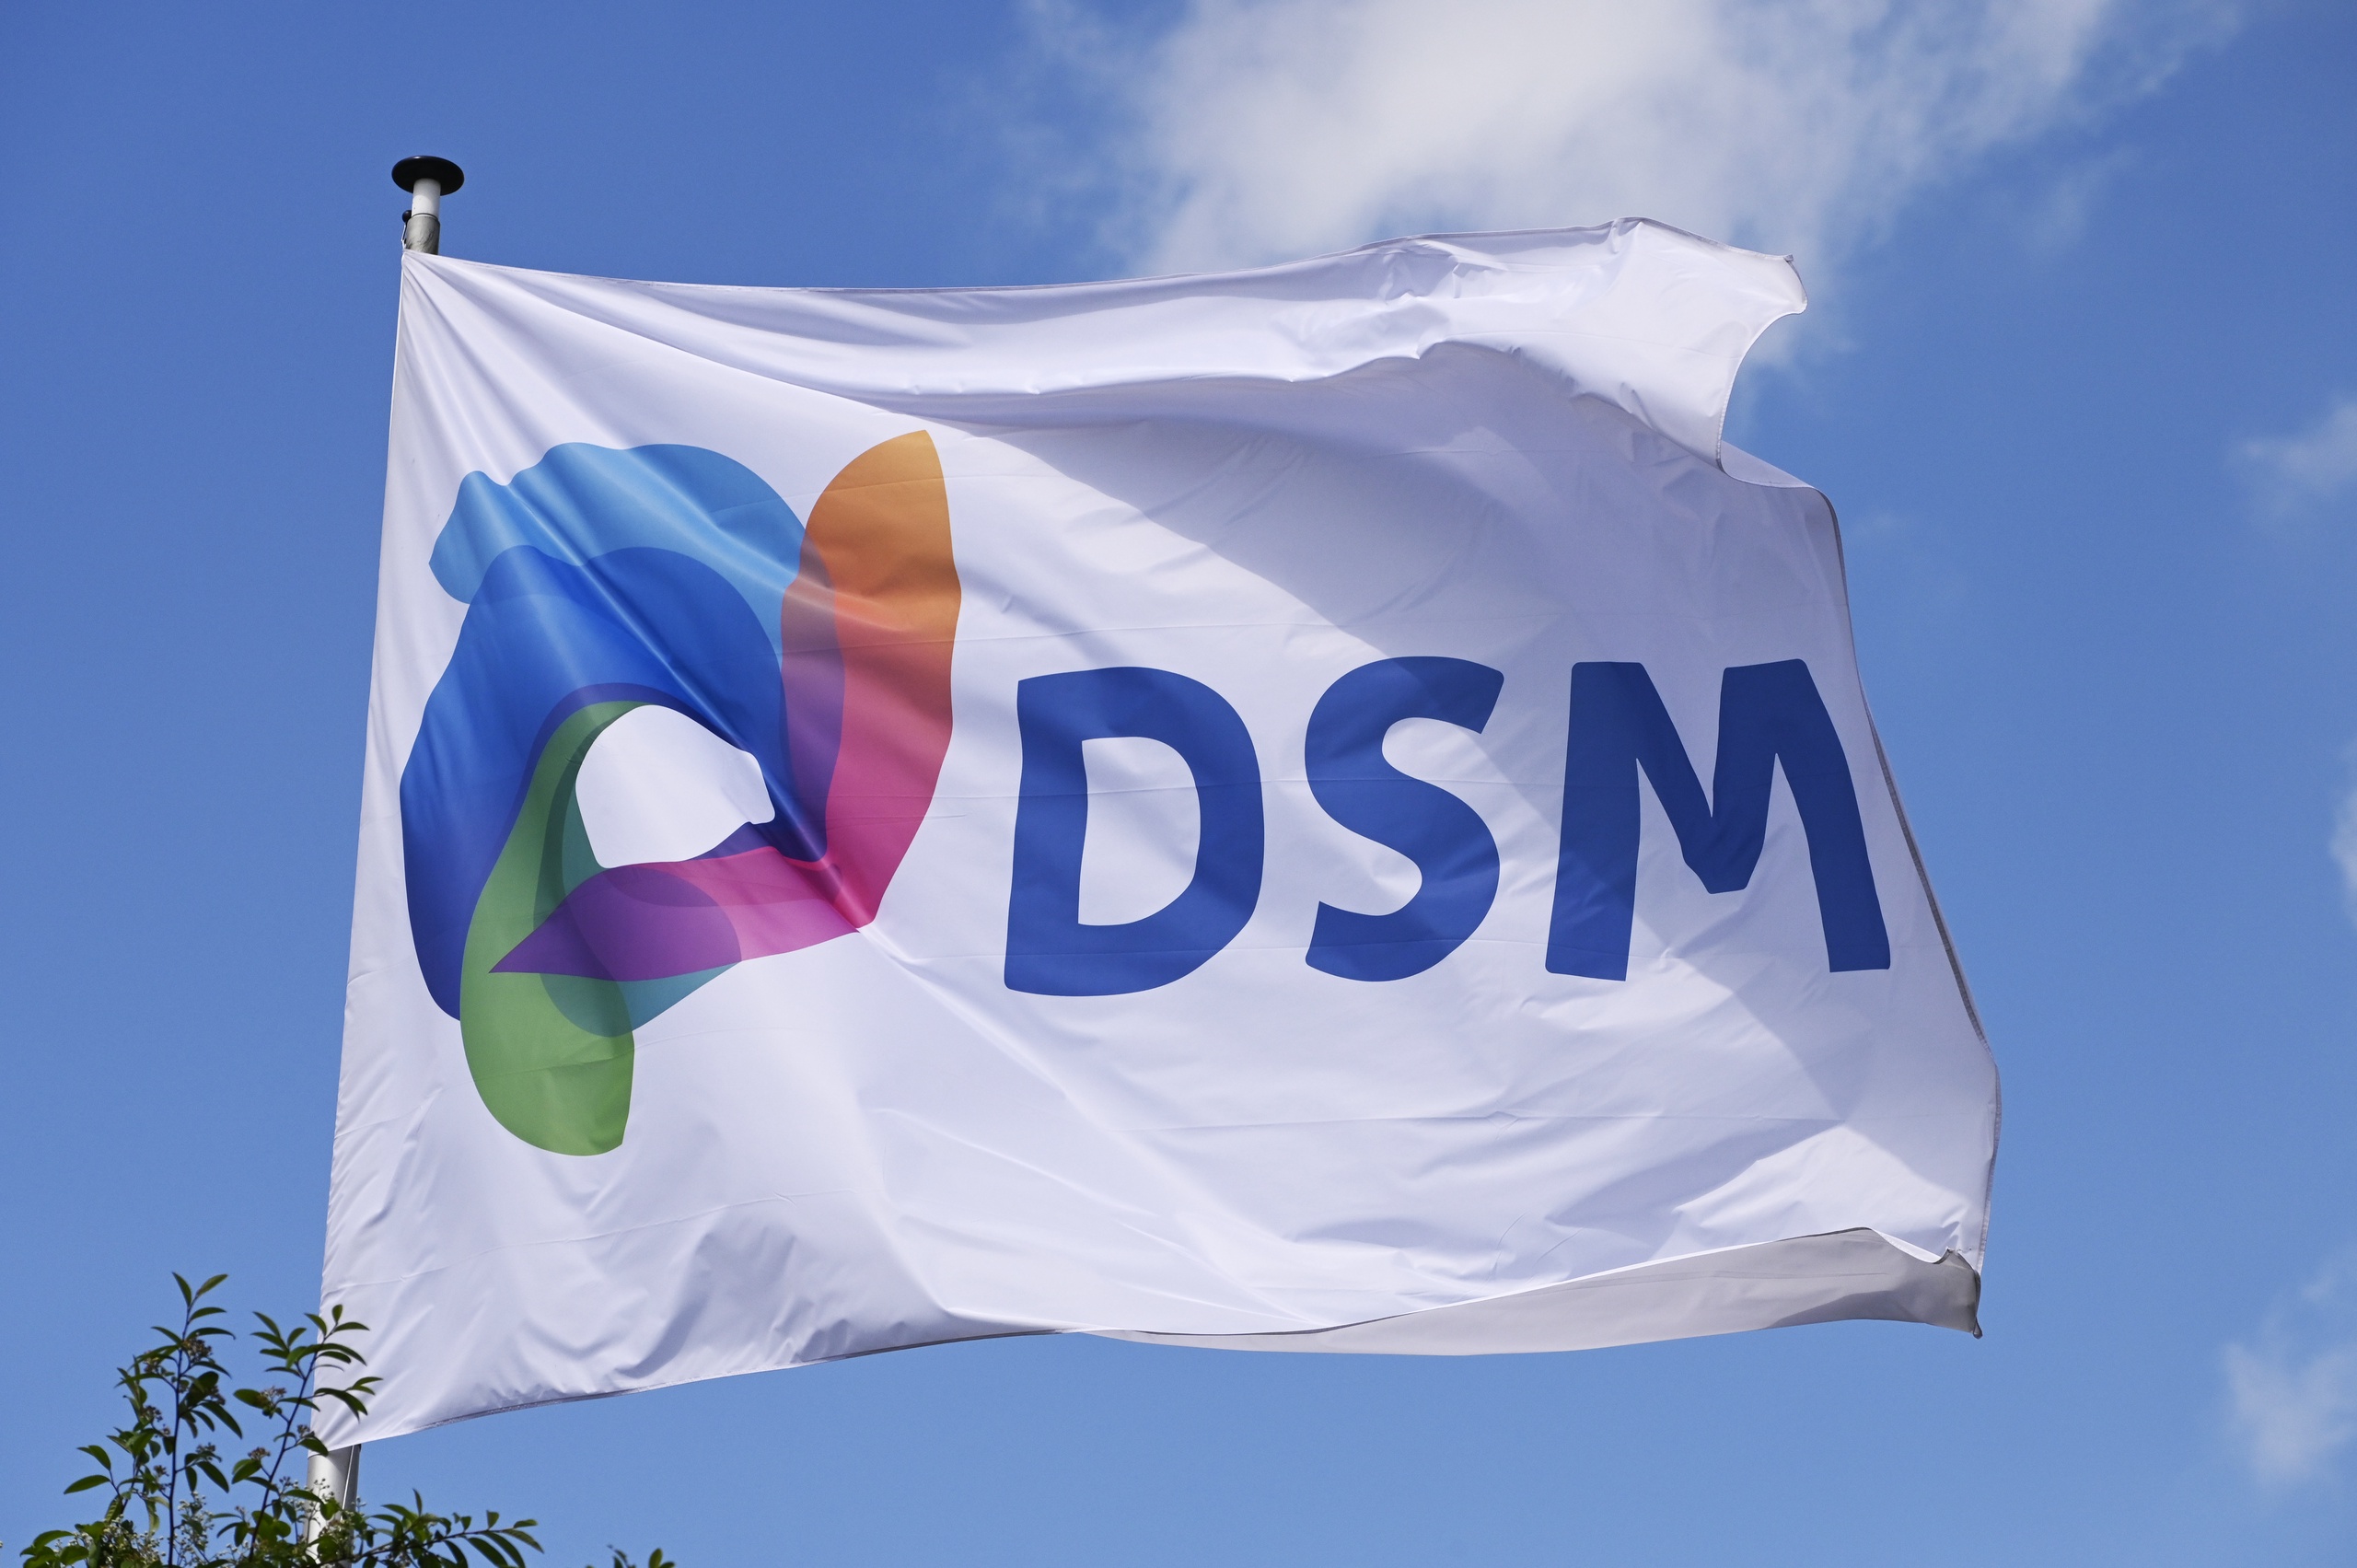 Het aandeel van DSM is vandaag flink gekelderd omdat de voedingsmiddelenfabrikant de fusie met het Zwitserse Firmenich uitstelt. Aandeelhouders konden hun aandelen eerst maar tot eind deze maand aanbieden, maar die termijn is nu verlengd naar 11 april.